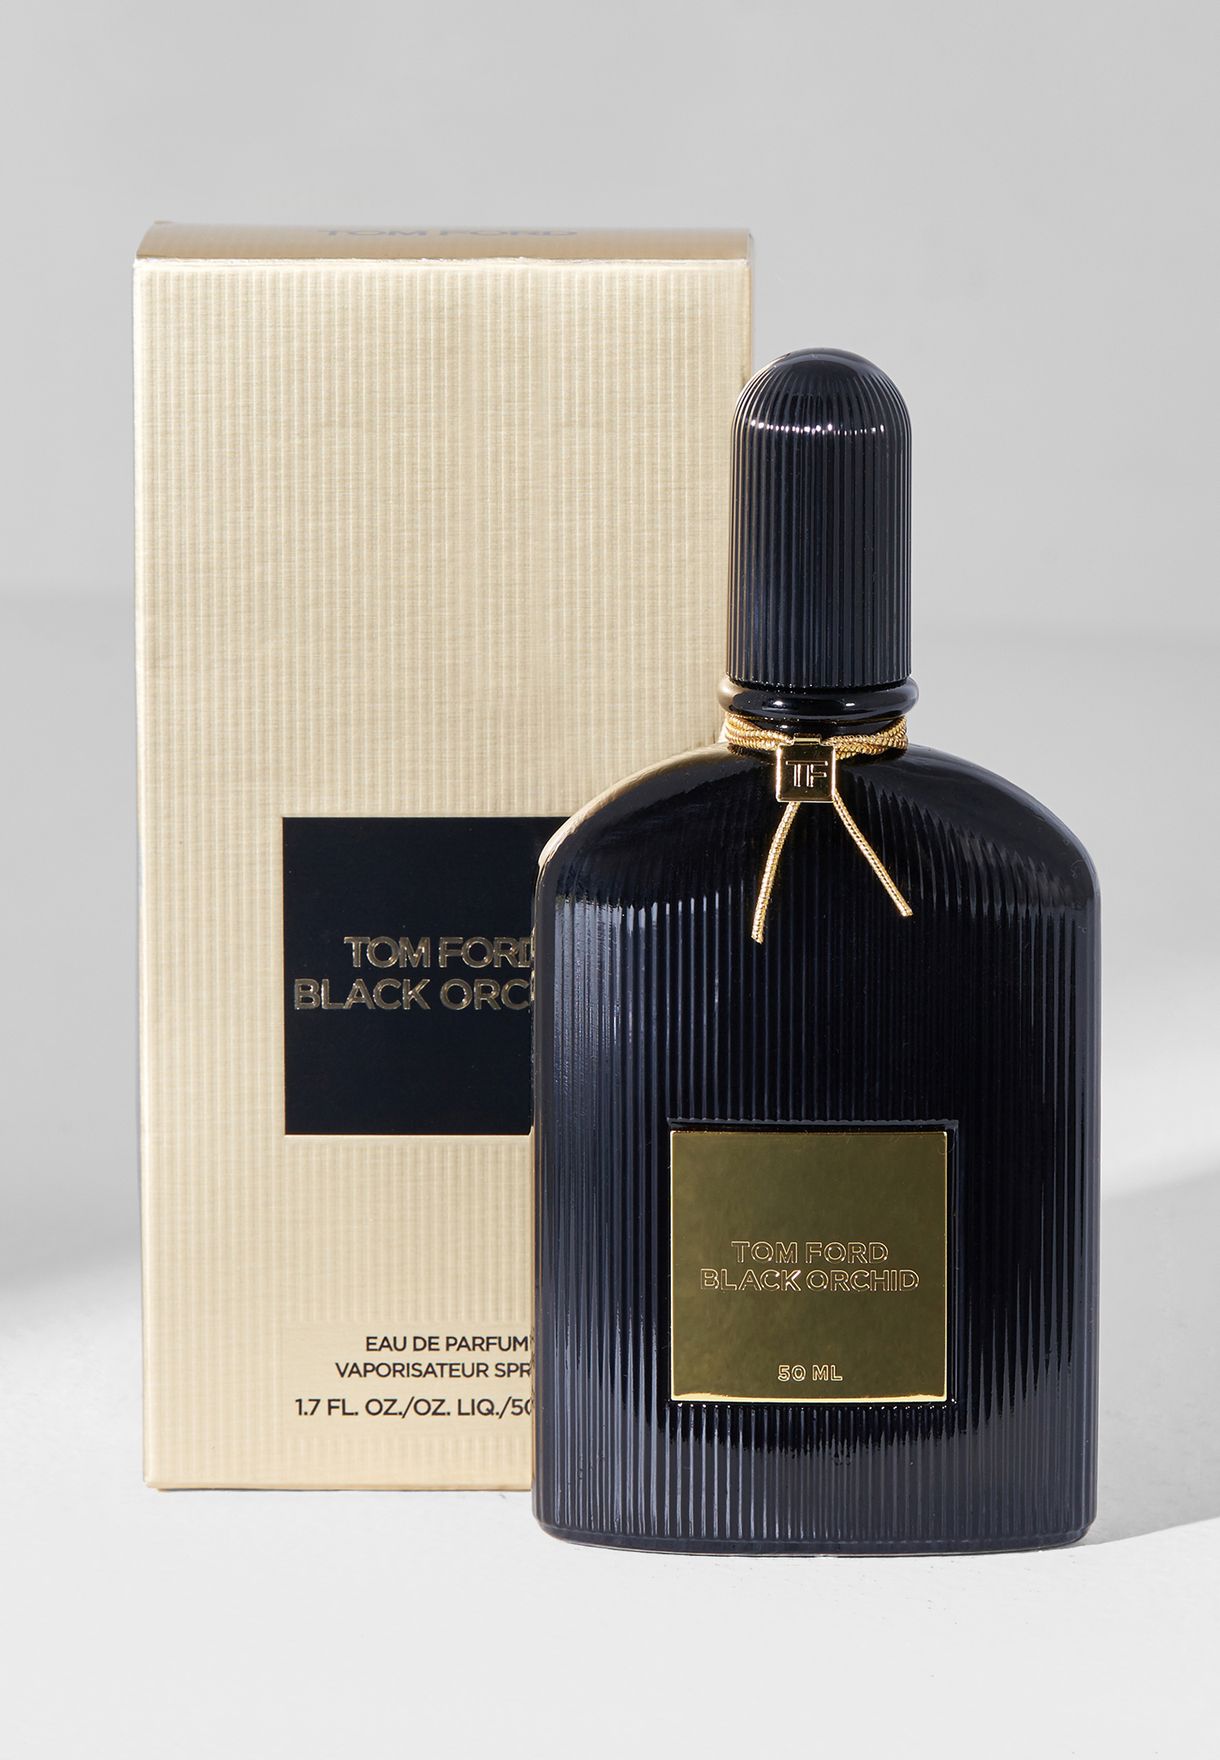 TOM FORD BLACK ORCHID EDP 50ML - Perfume Bangladesh